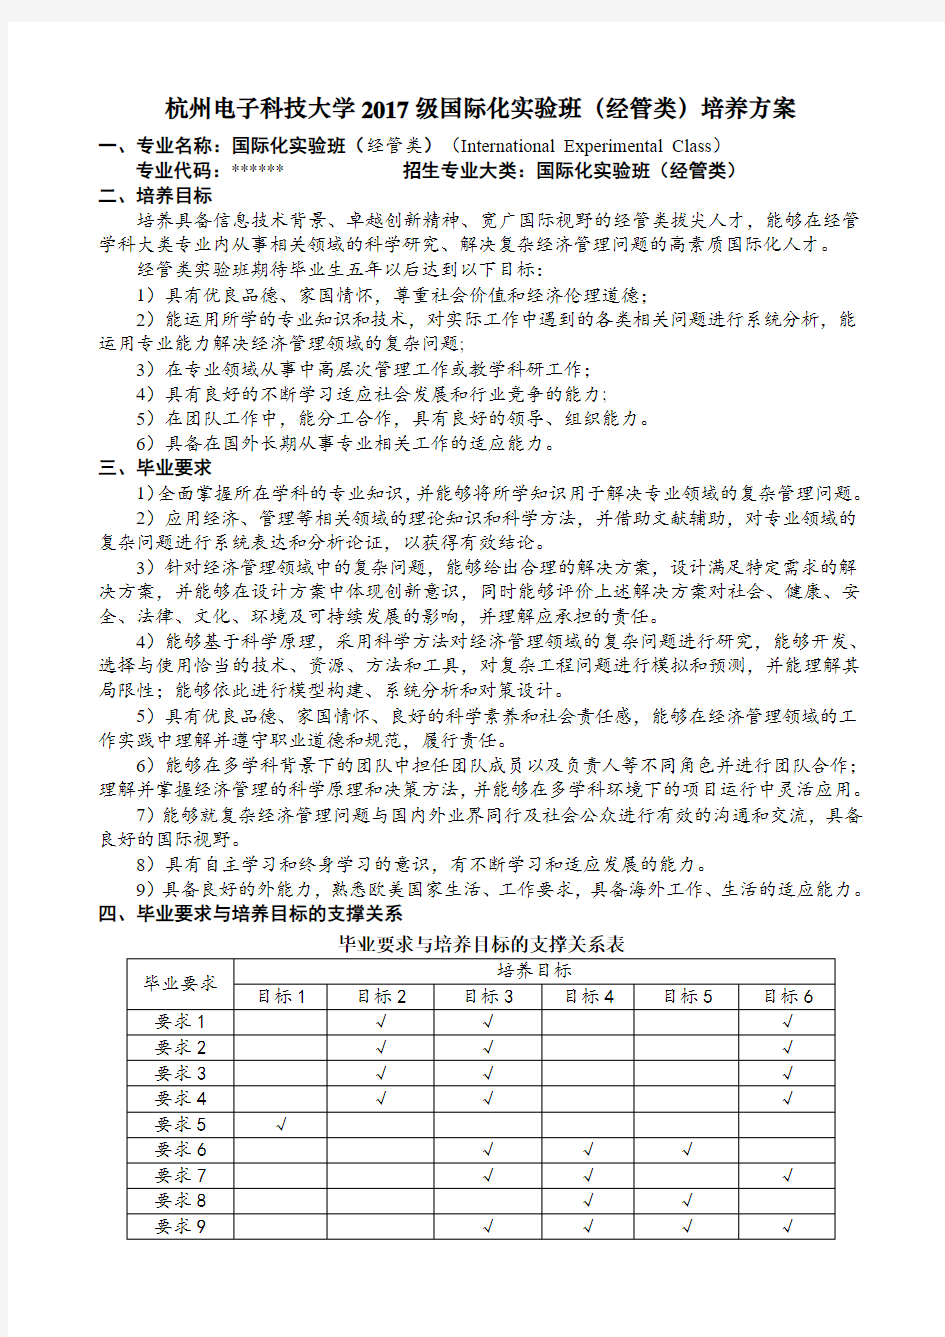 杭州电子科技大学2017级国际化实验班(经管类)培养方案